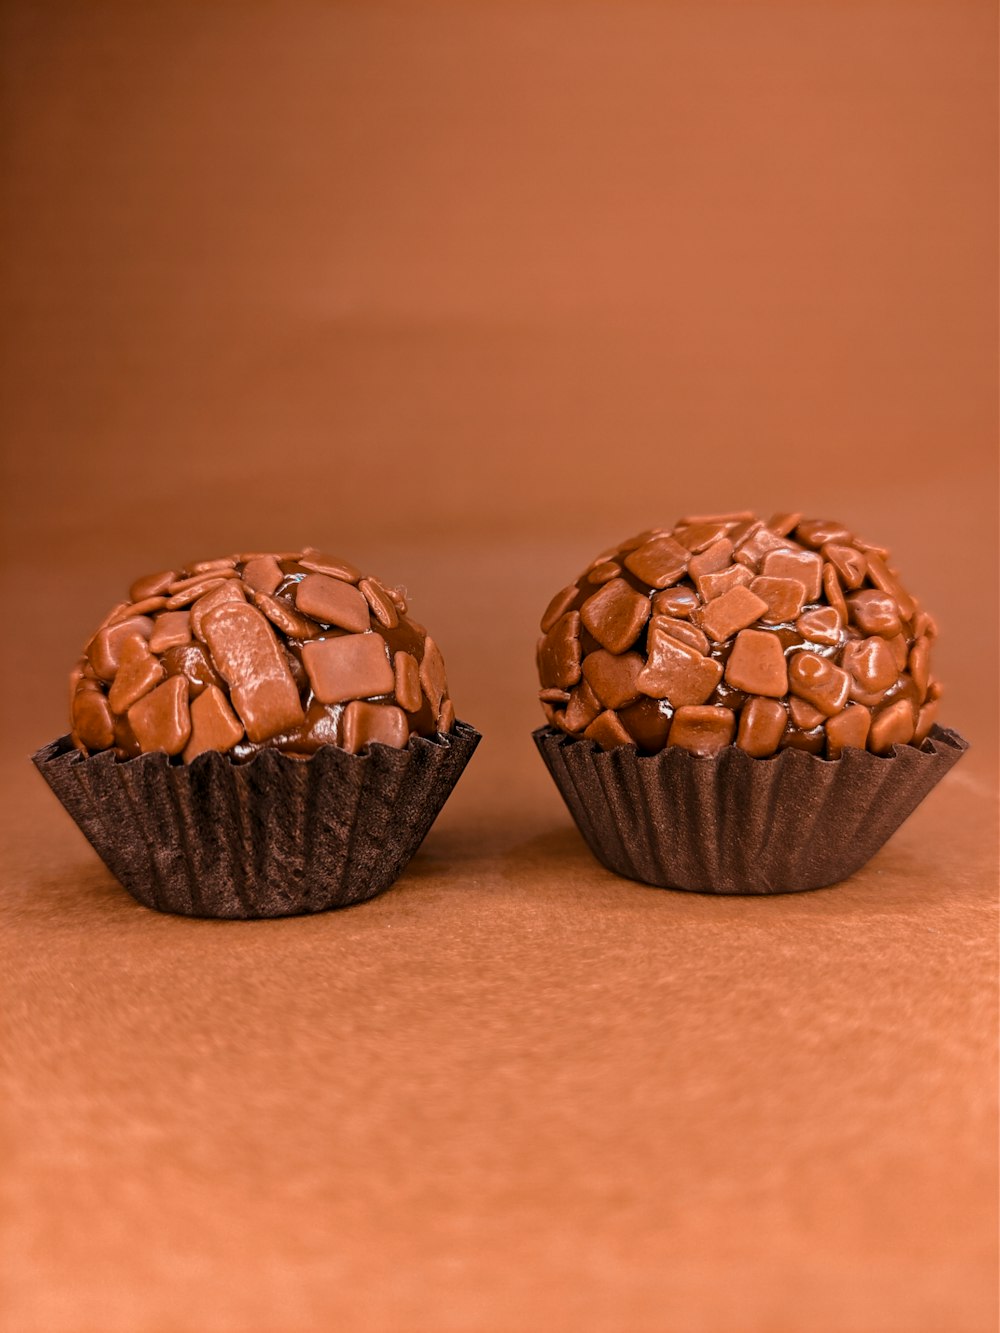 trois cupcakes au chocolat sur une table en bois brun